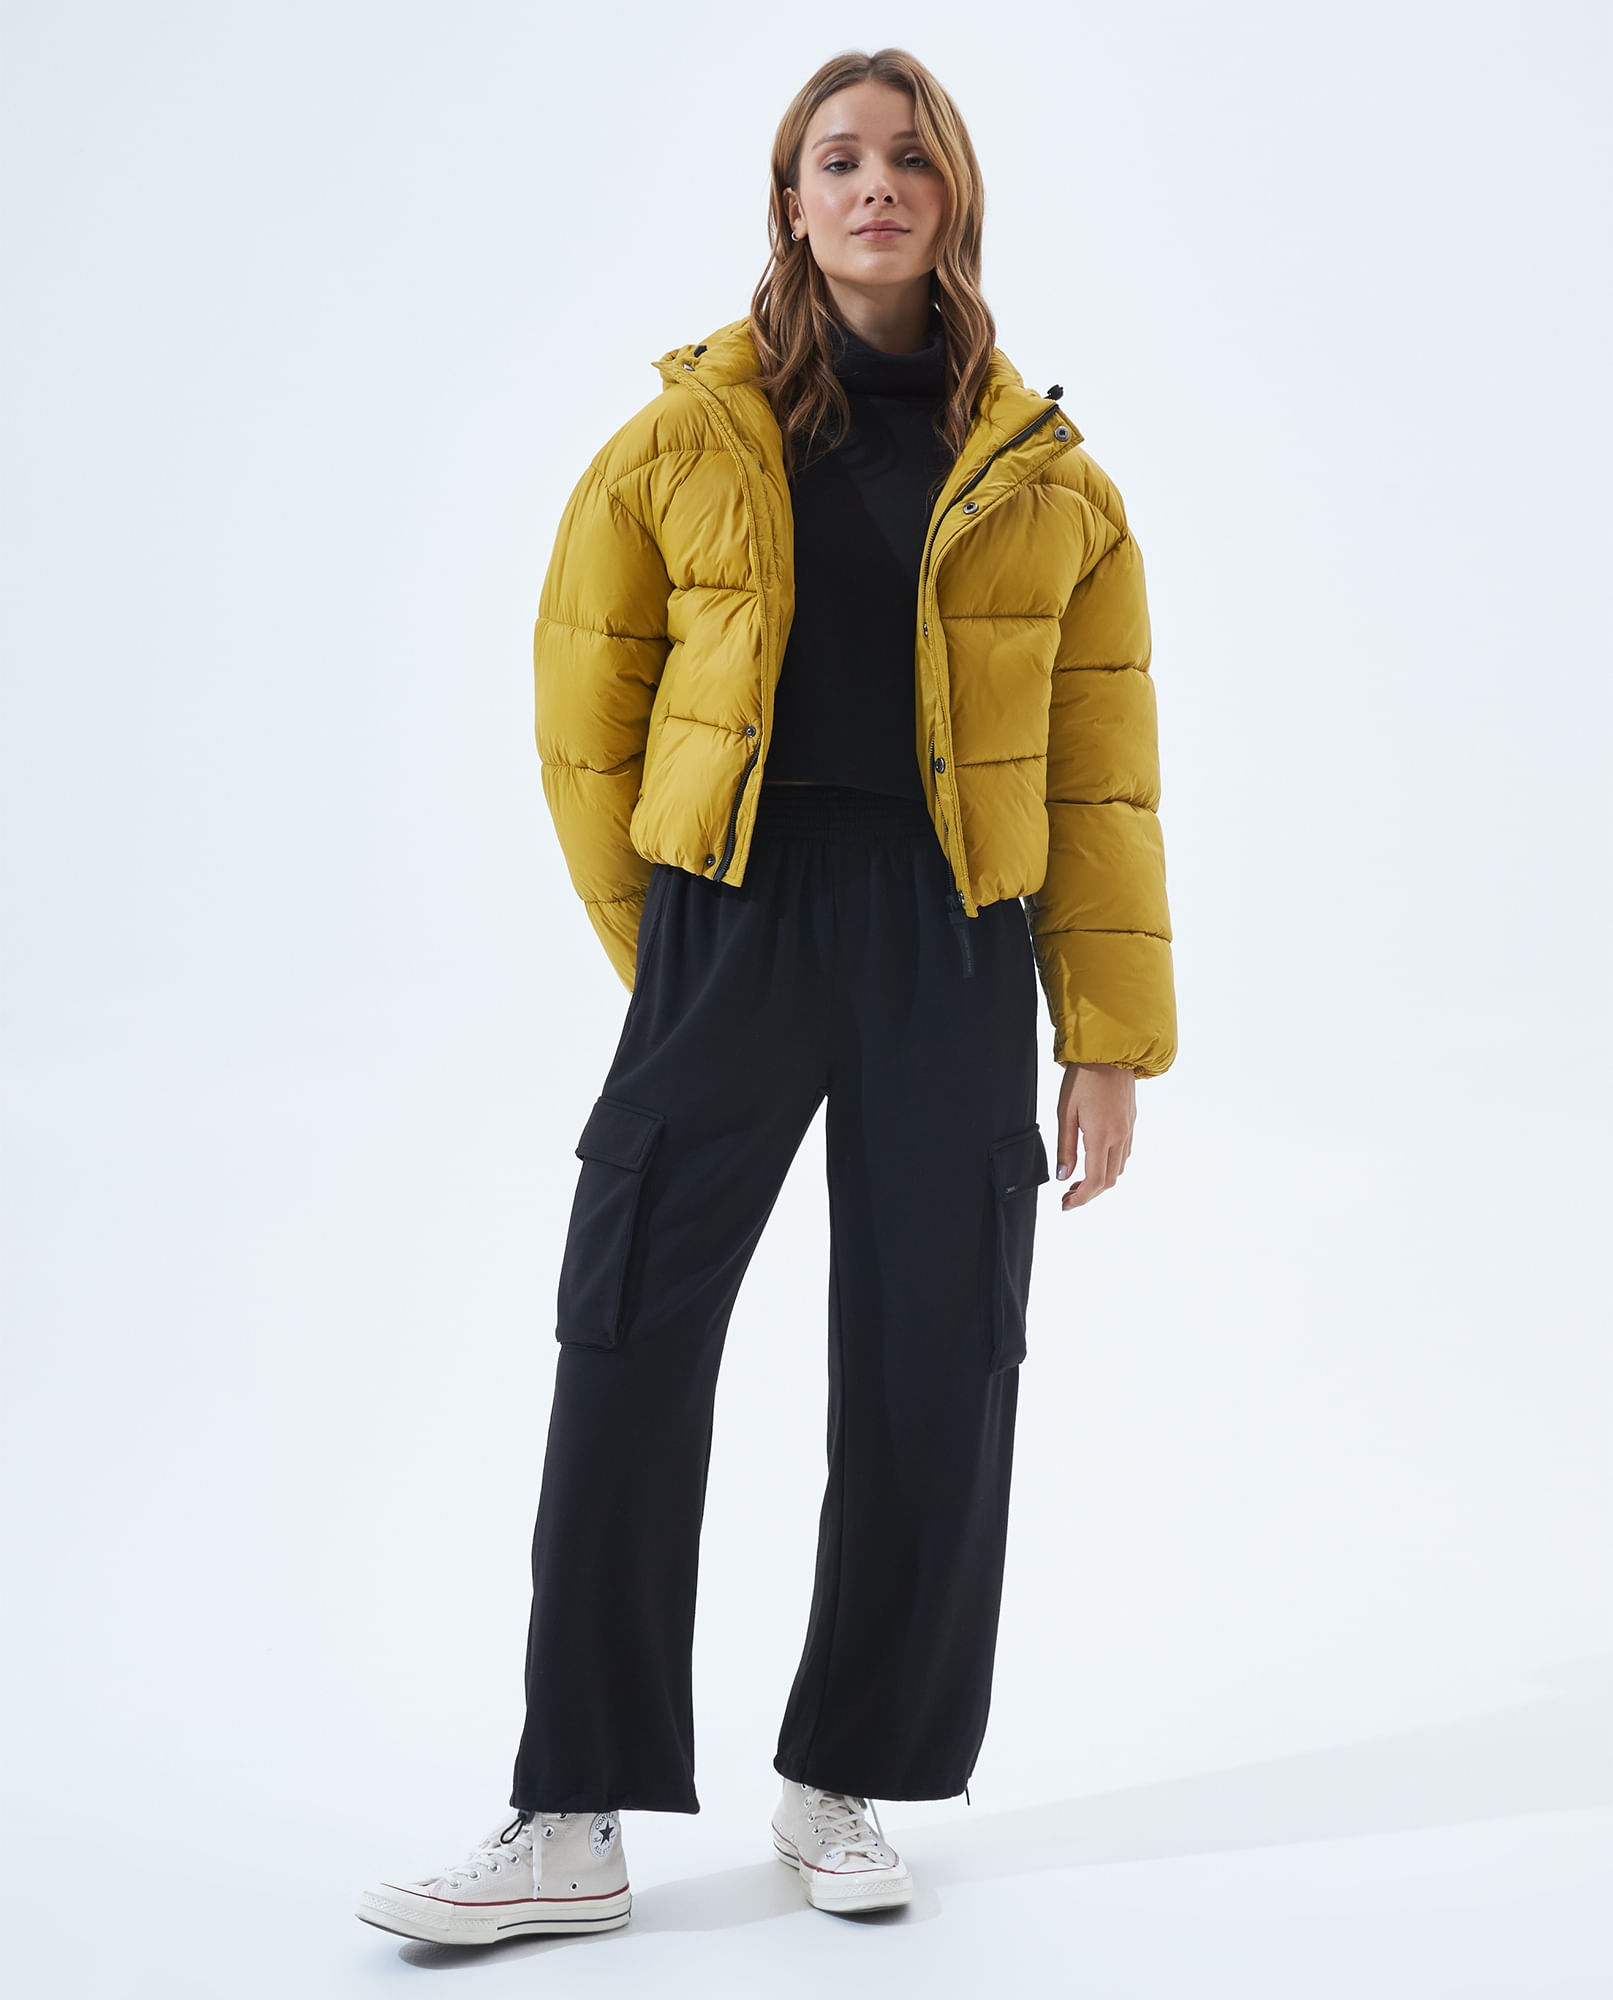 Combina tus chaquetas de invierno para mujer de manera cool - Vibra